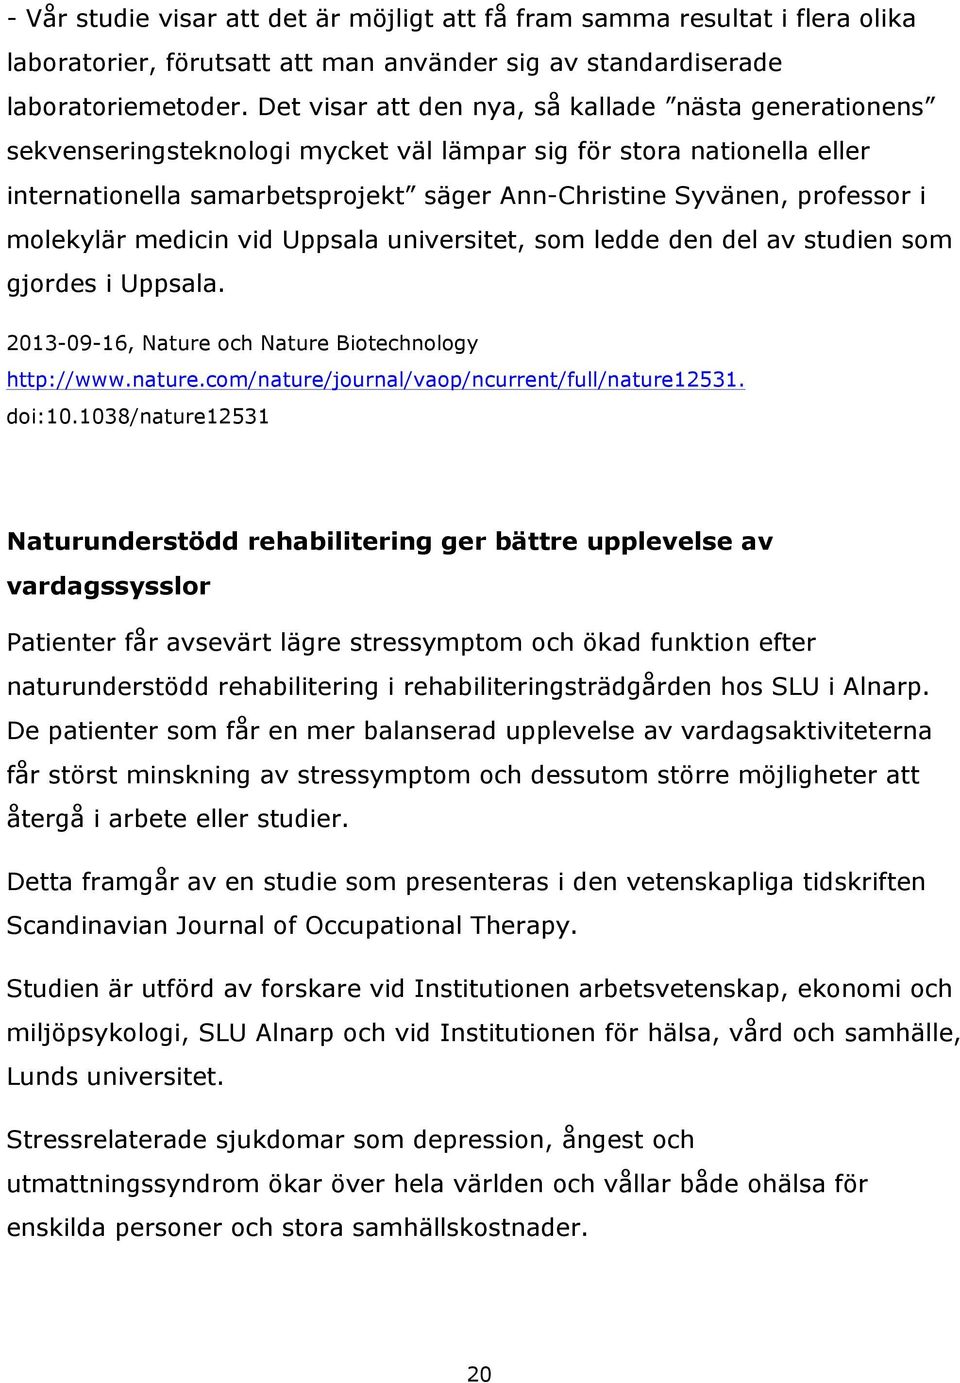 molekylär medicin vid Uppsala universitet, som ledde den del av studien som gjordes i Uppsala. 2013-09-16, Nature och Nature Biotechnology http://www.nature.